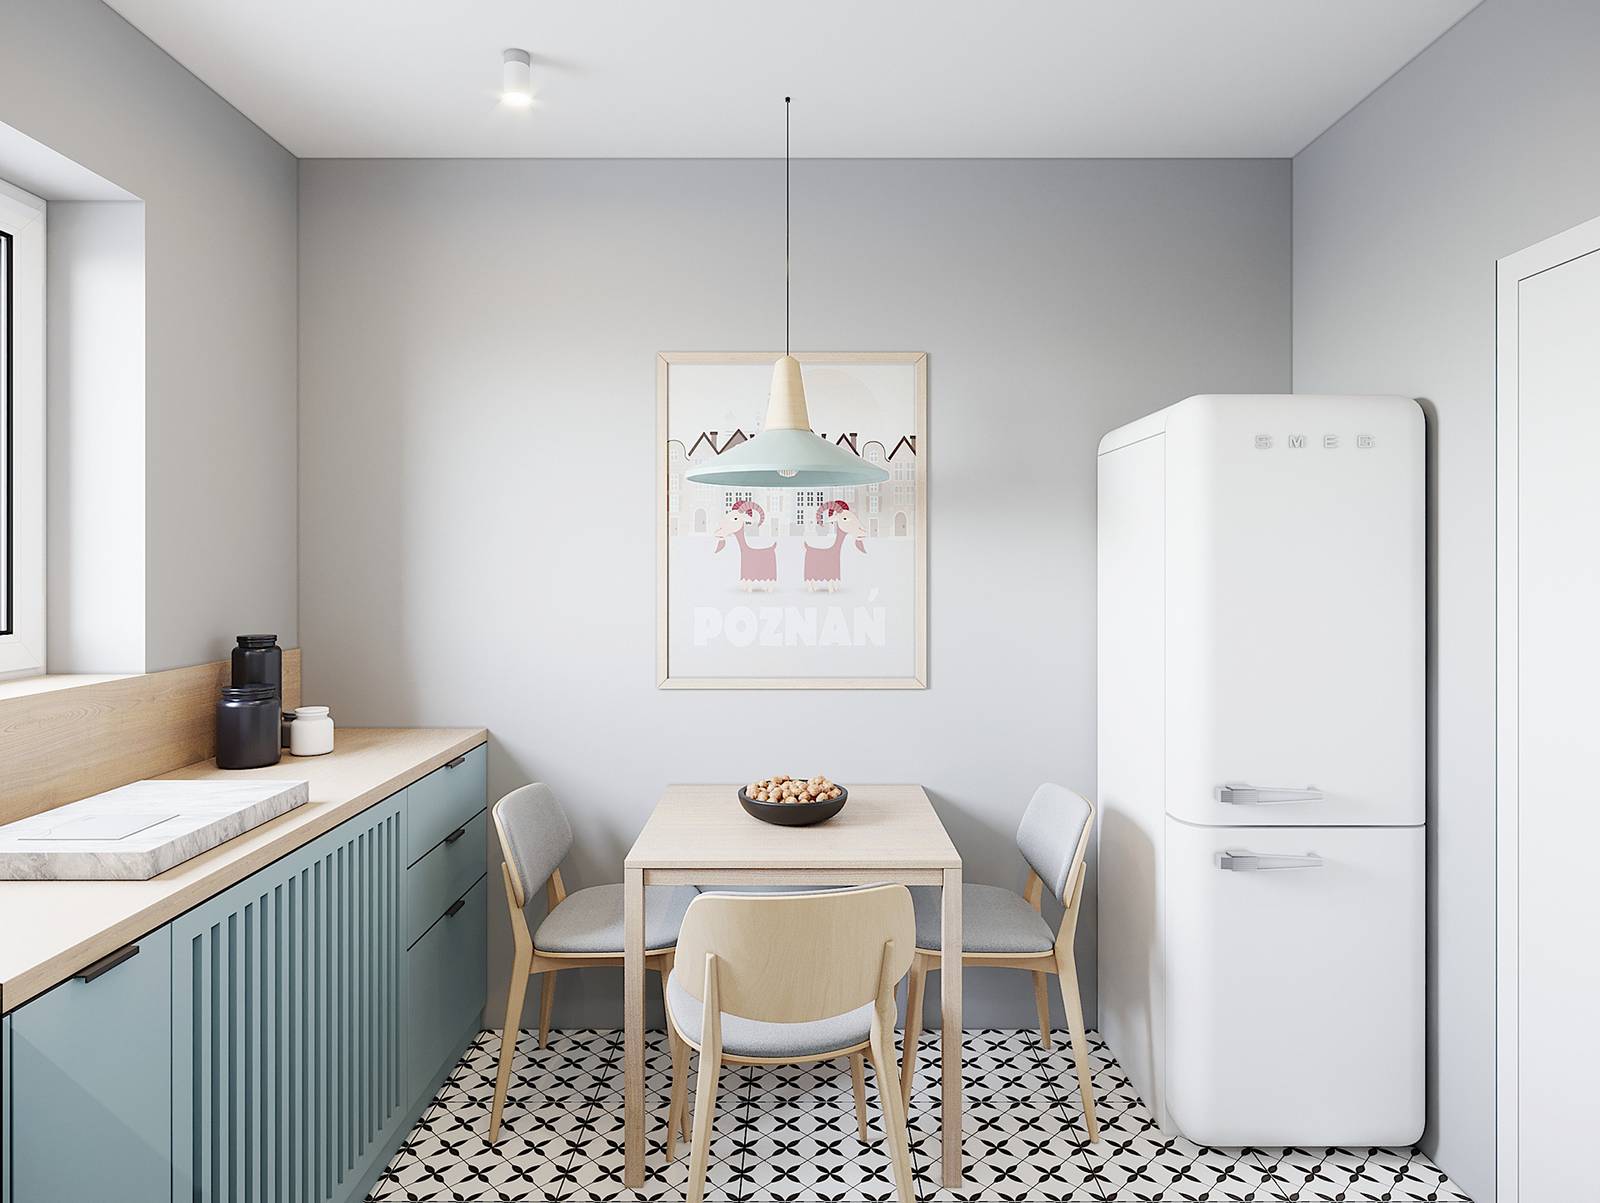 Tủ lạnh màu trắng thuộc thương hiệu nội thất nổi tiếng SMEG đặt ở góc phòng. Góc ăn uống xinh xắn với bộ bàn ăn bằng gỗ nhẹ nhàng cũng bức tranh ngộ nghĩnh.